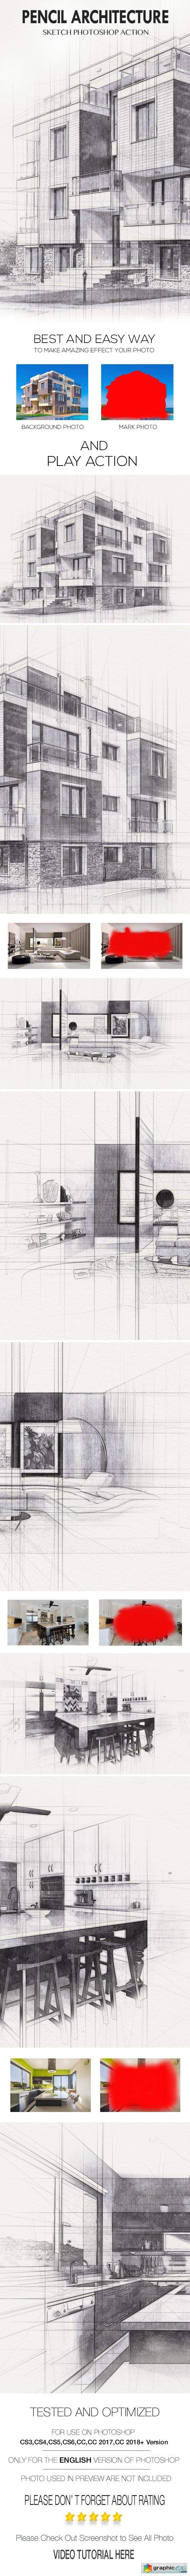 Pencil Architecture Sketch Photoshop Action